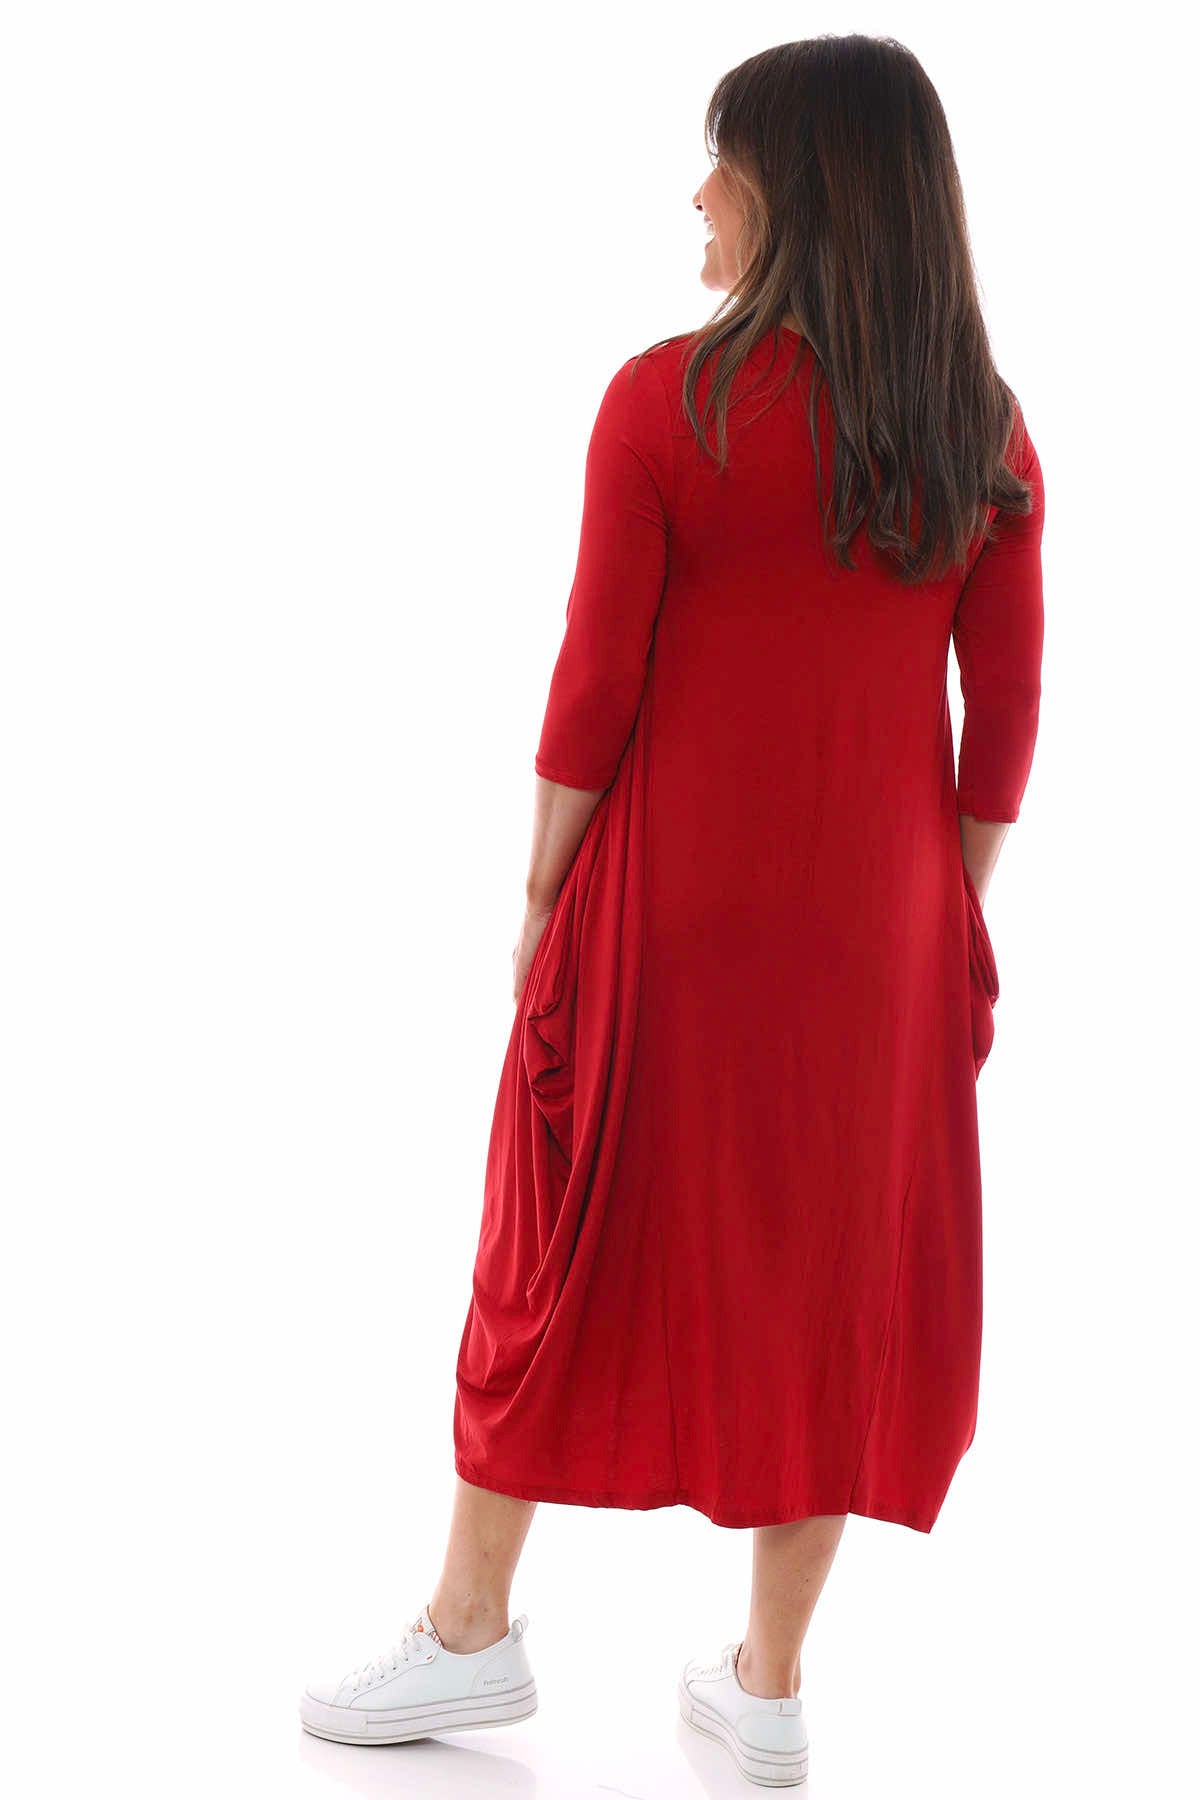 Boswin Dress Red